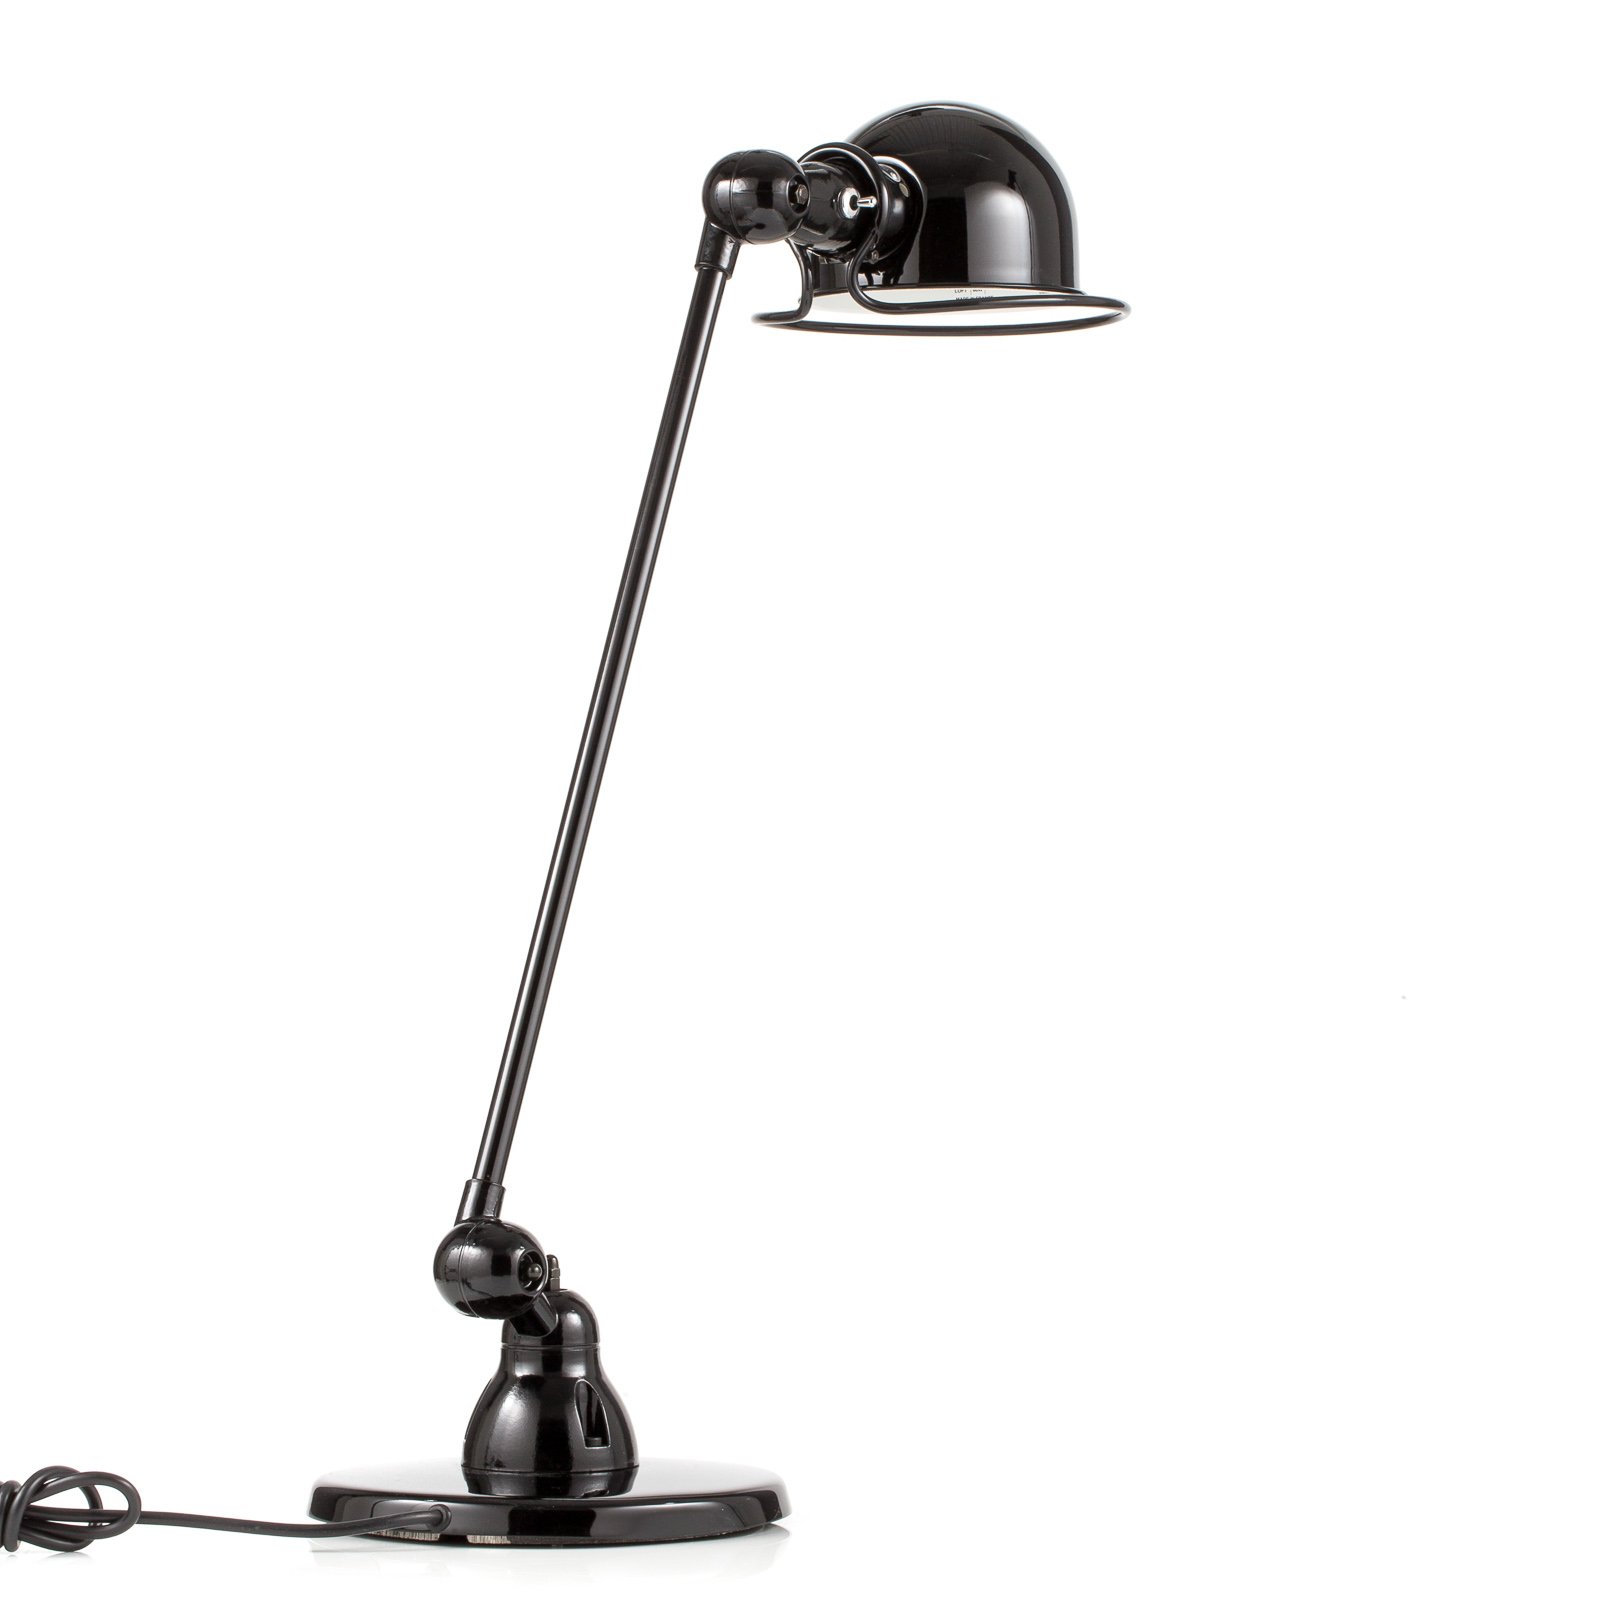 Jieldé Loft D6000 stolní lampa, černá